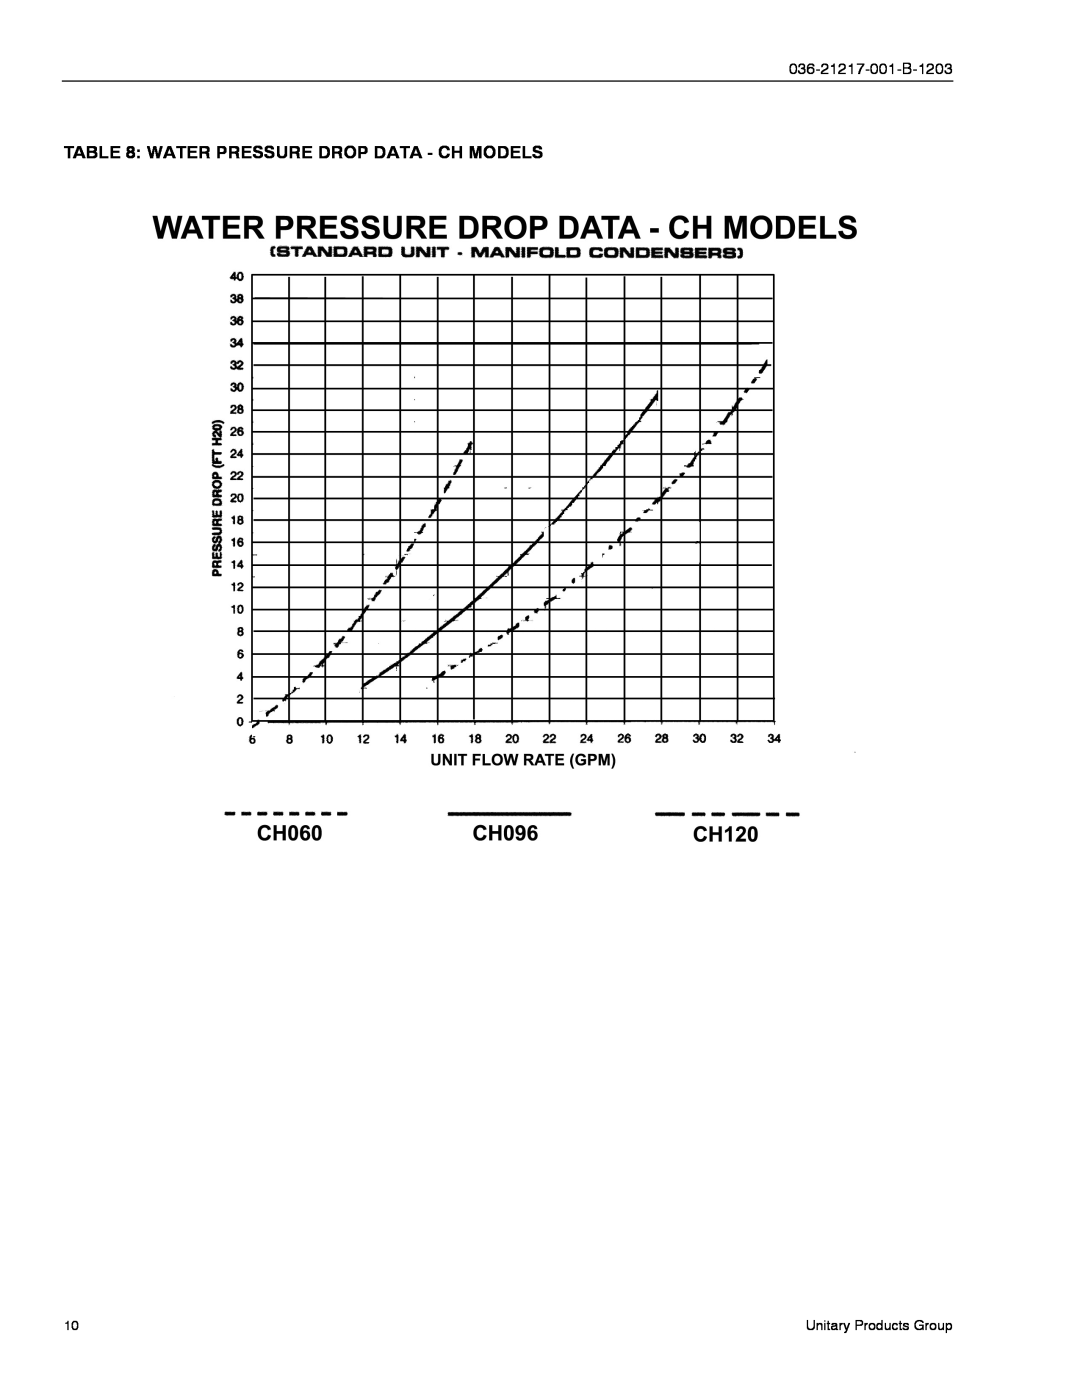 York CH060, CU060 manual Water Pressure Drop Data - Ch Models, 036-21217-001-B-1203 